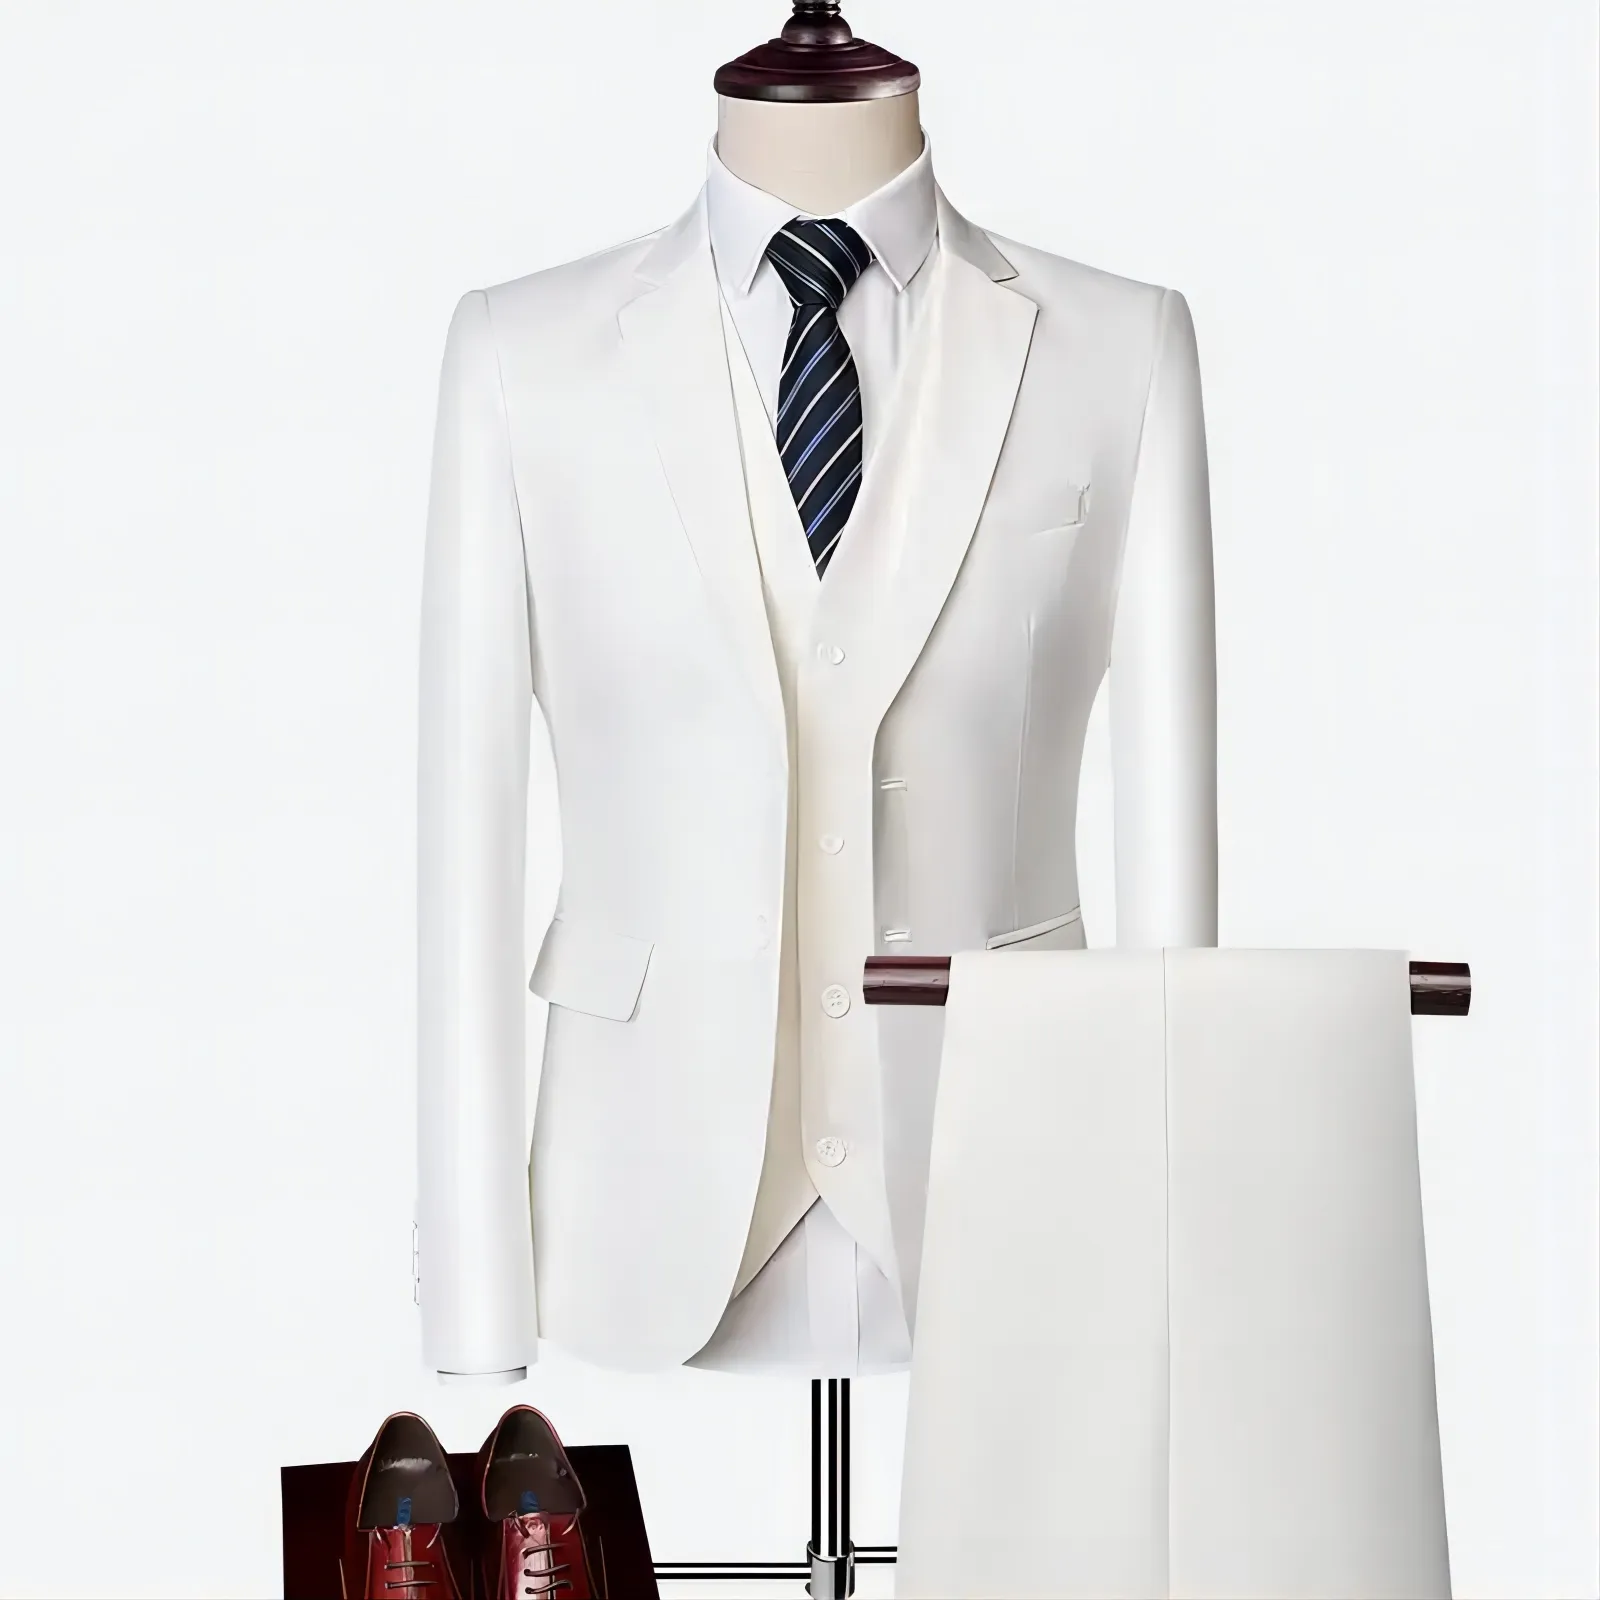 New men's suit slimming casual multi-color business suit black banquet wedding important occasion suit coat